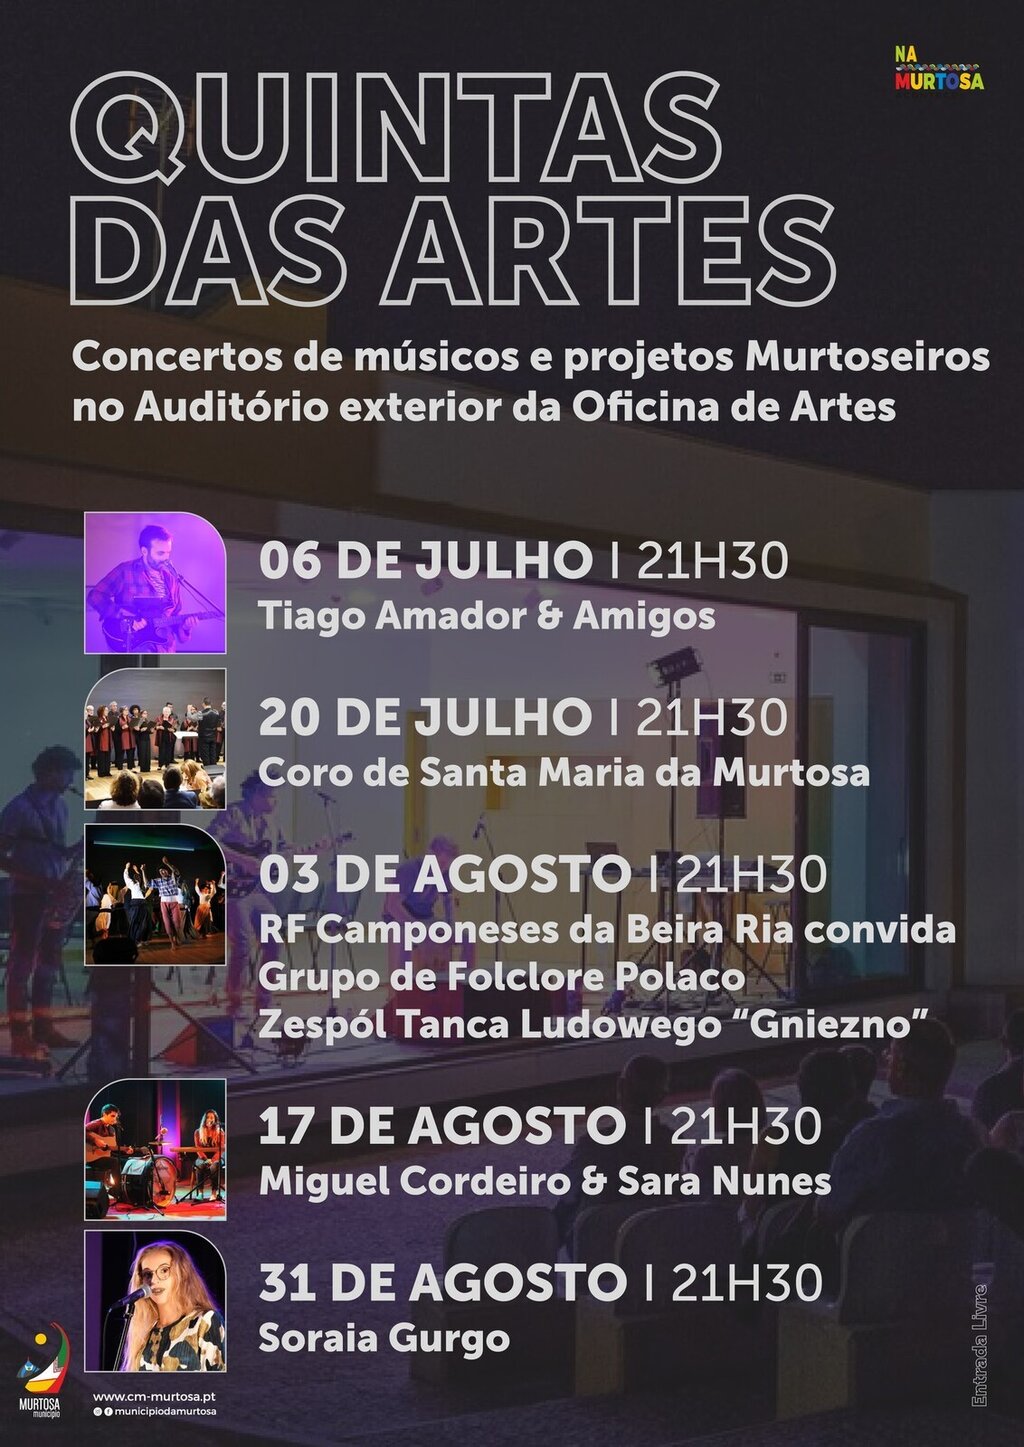 QUINTAS DAS ARTES MOSTRA TALENTO MURTOSEIRO NO AUDITÓRIO EXTERIOR DA OFICINA DE ARTES